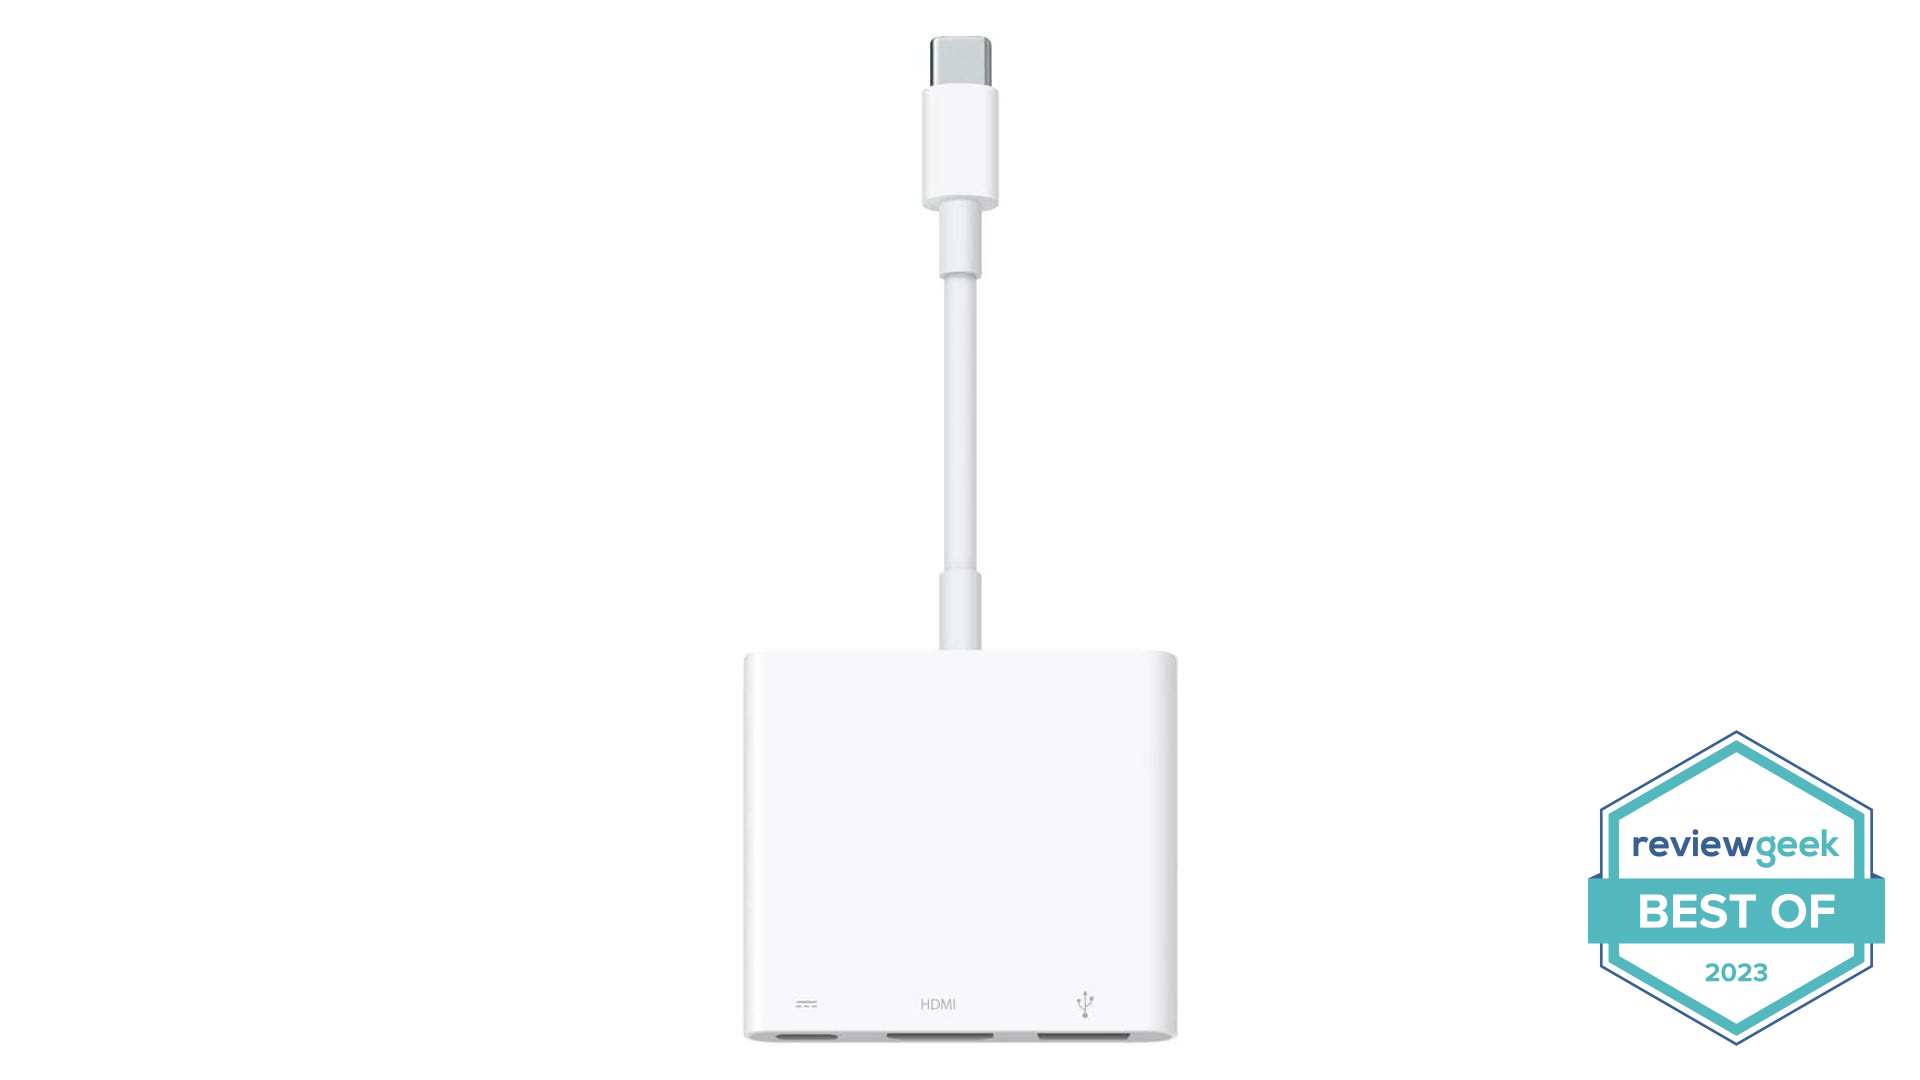 White Apple USB-C Digital AV Multiport Adapter on a white background